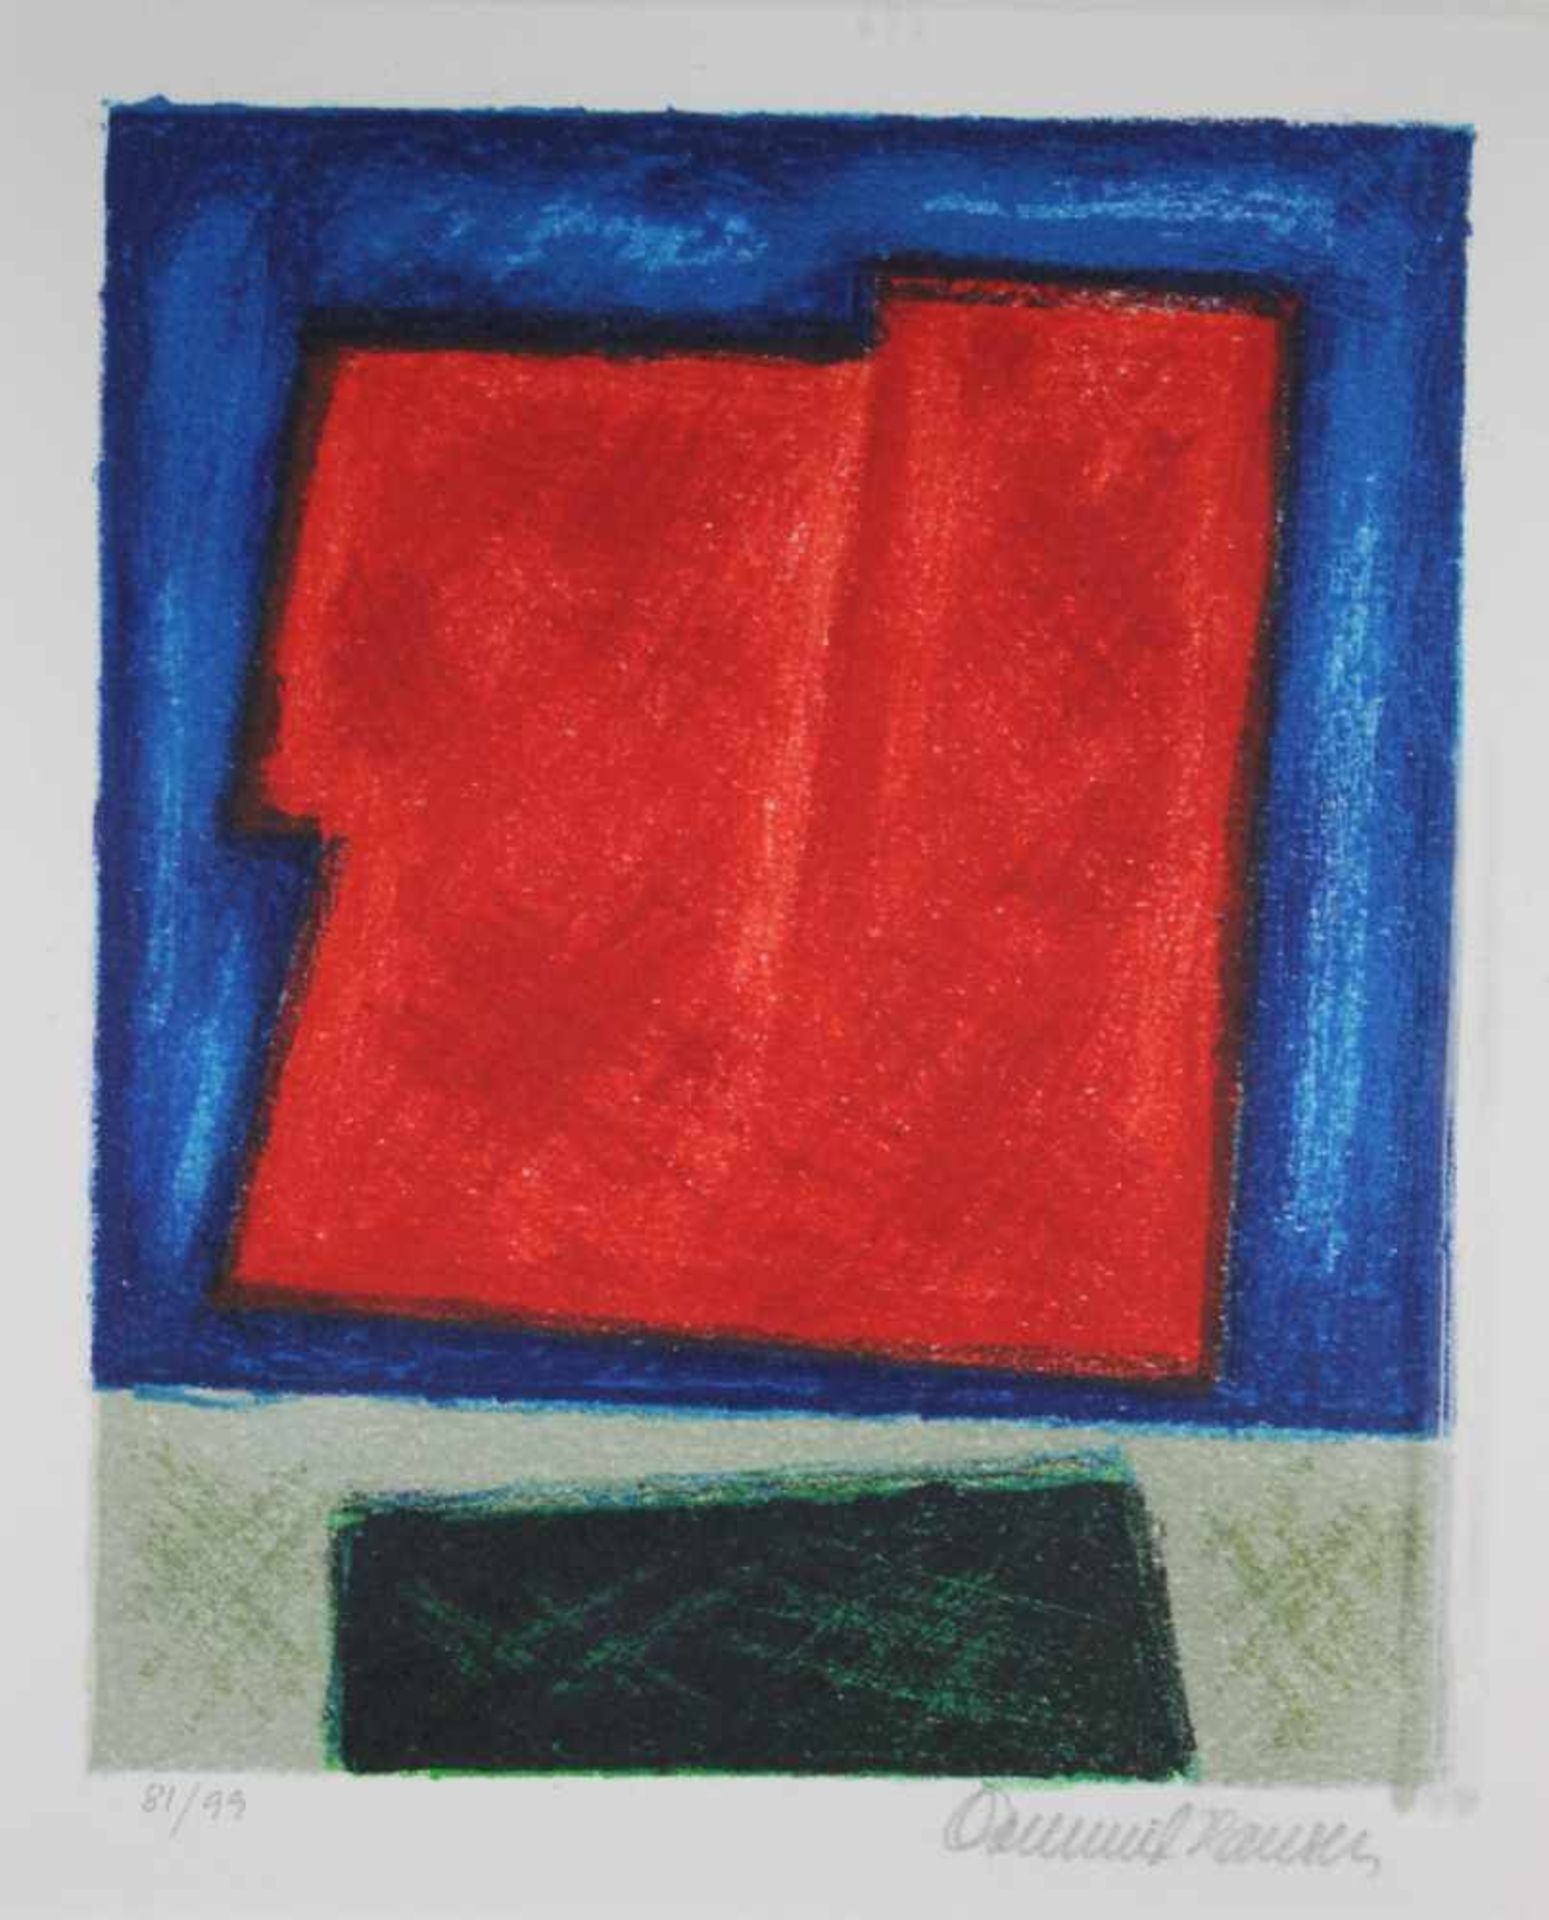 Abstrakte Komposition, Lithographie a. Papier, numm.: 81/99, sign.: Osmund Hansen, Lichtmaße: 23 x